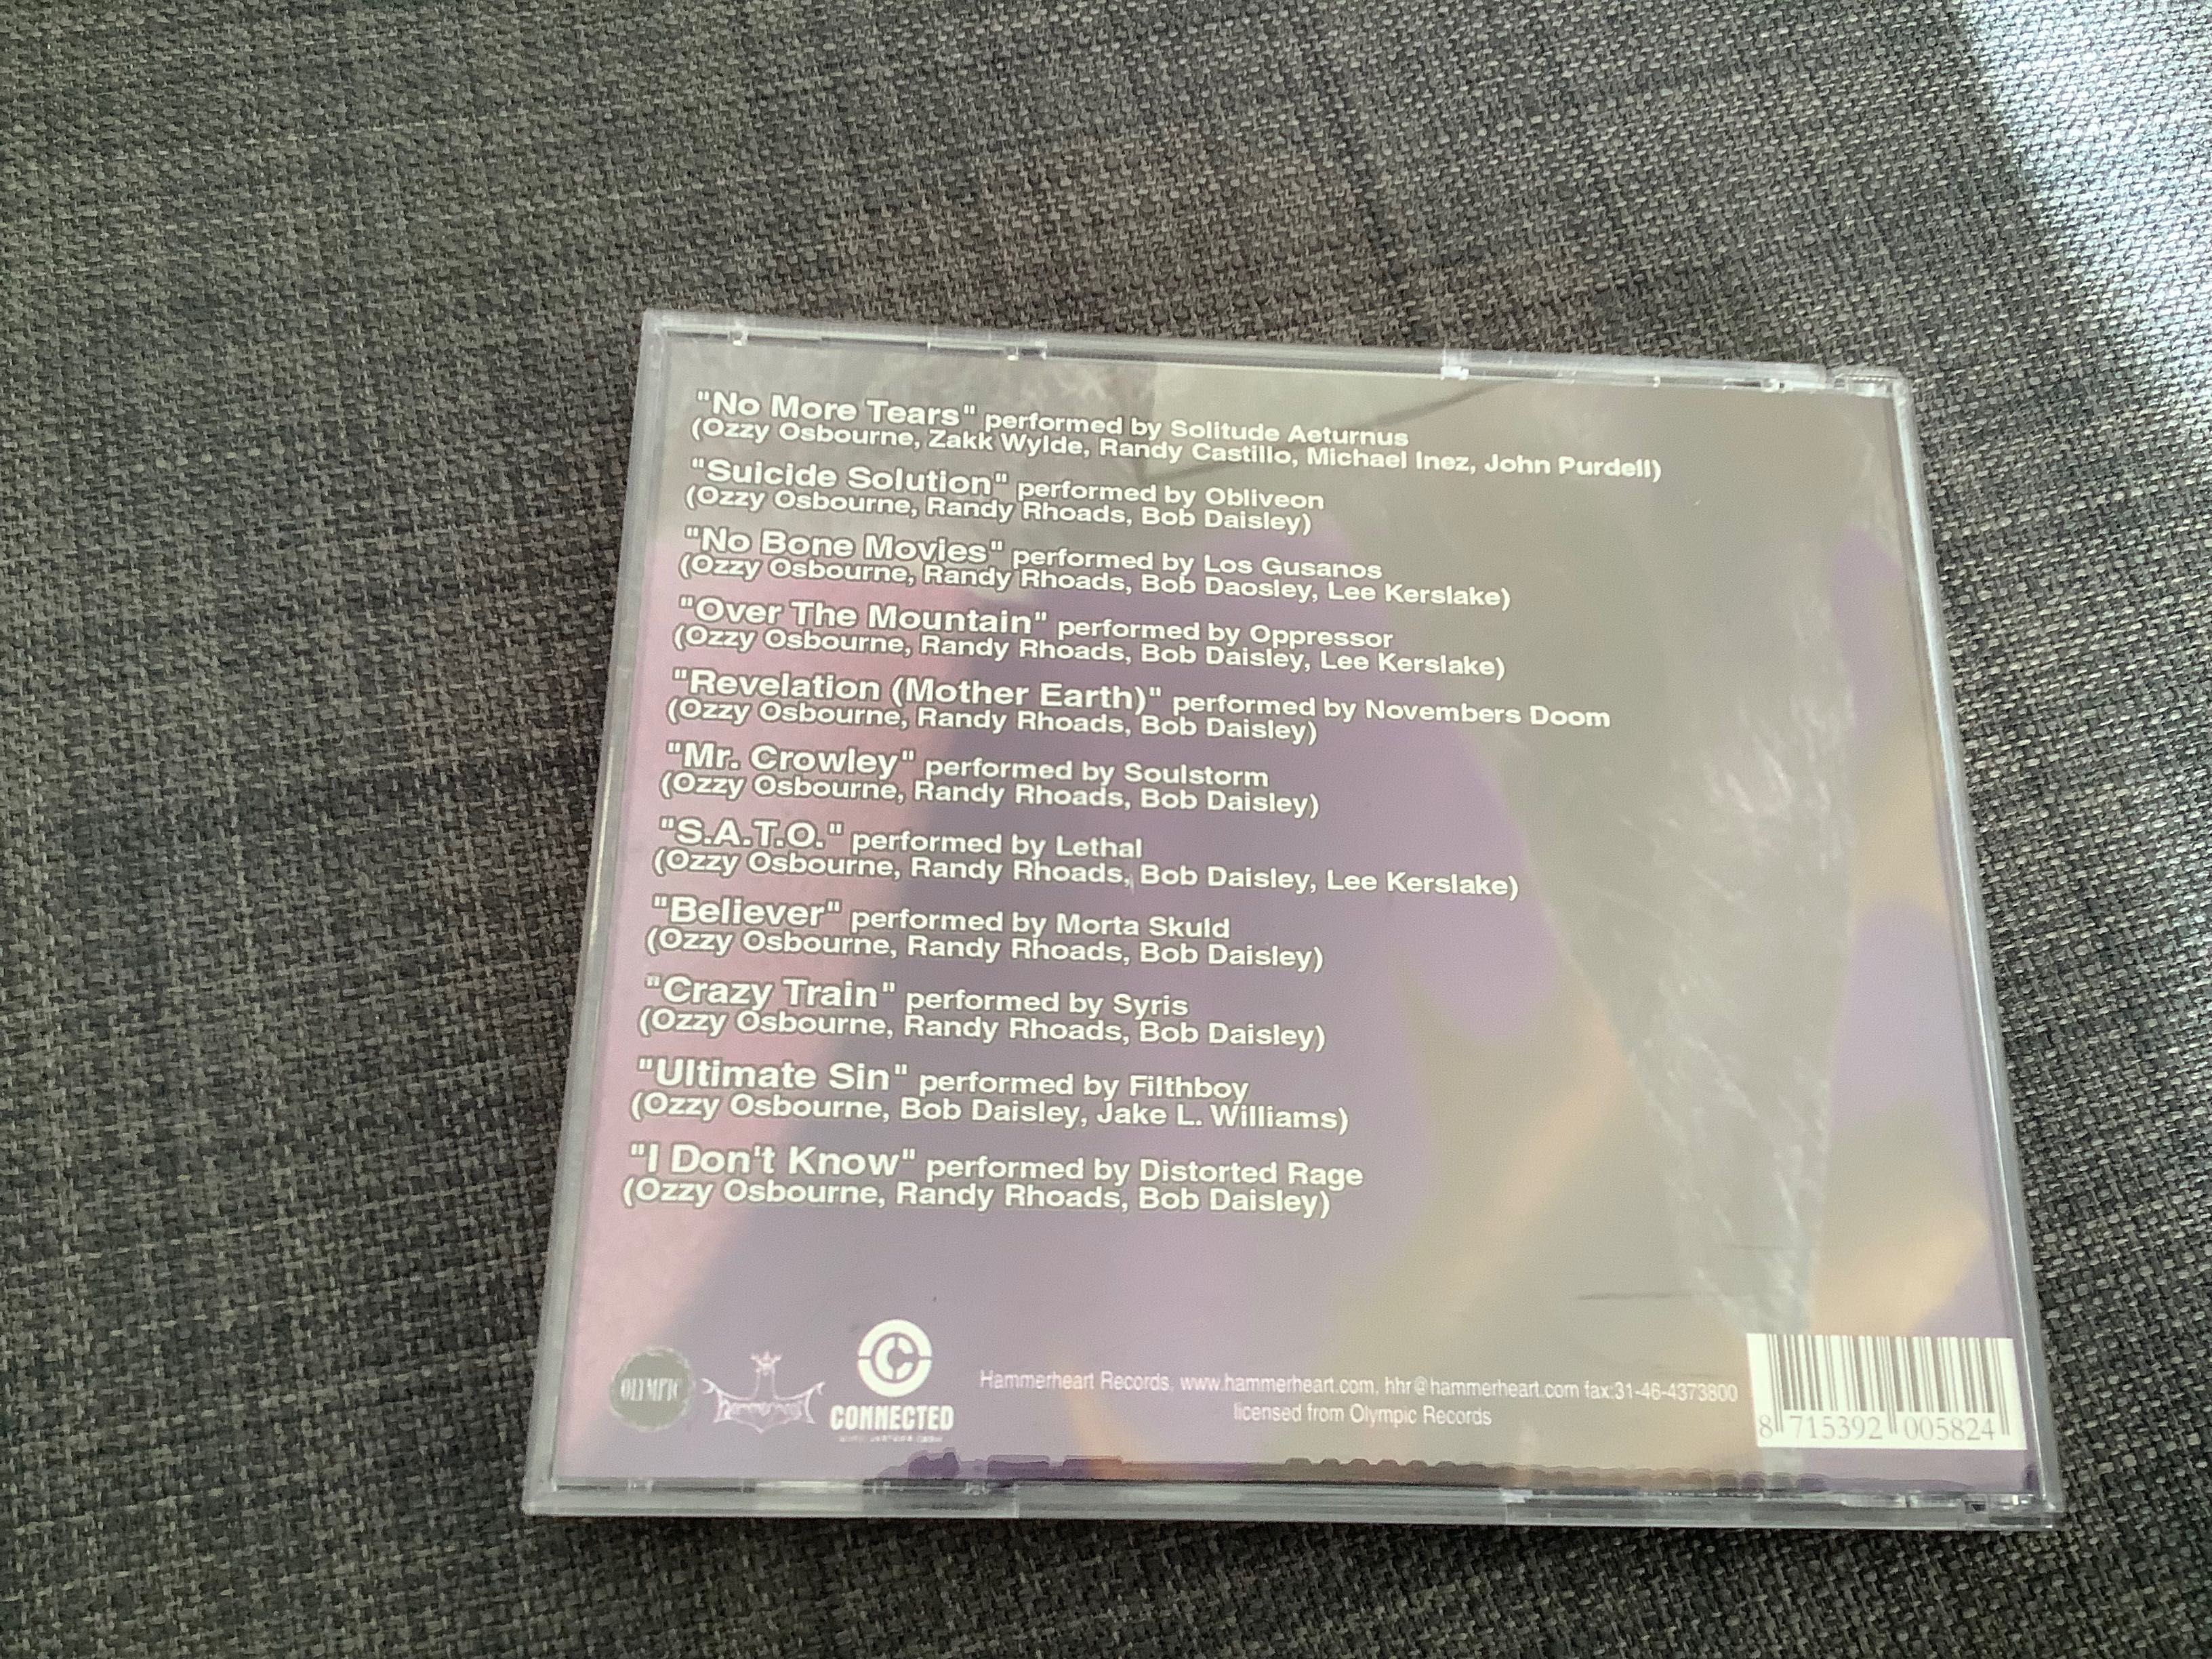 Vários - Legend Of A Madman: A Tribute - cd